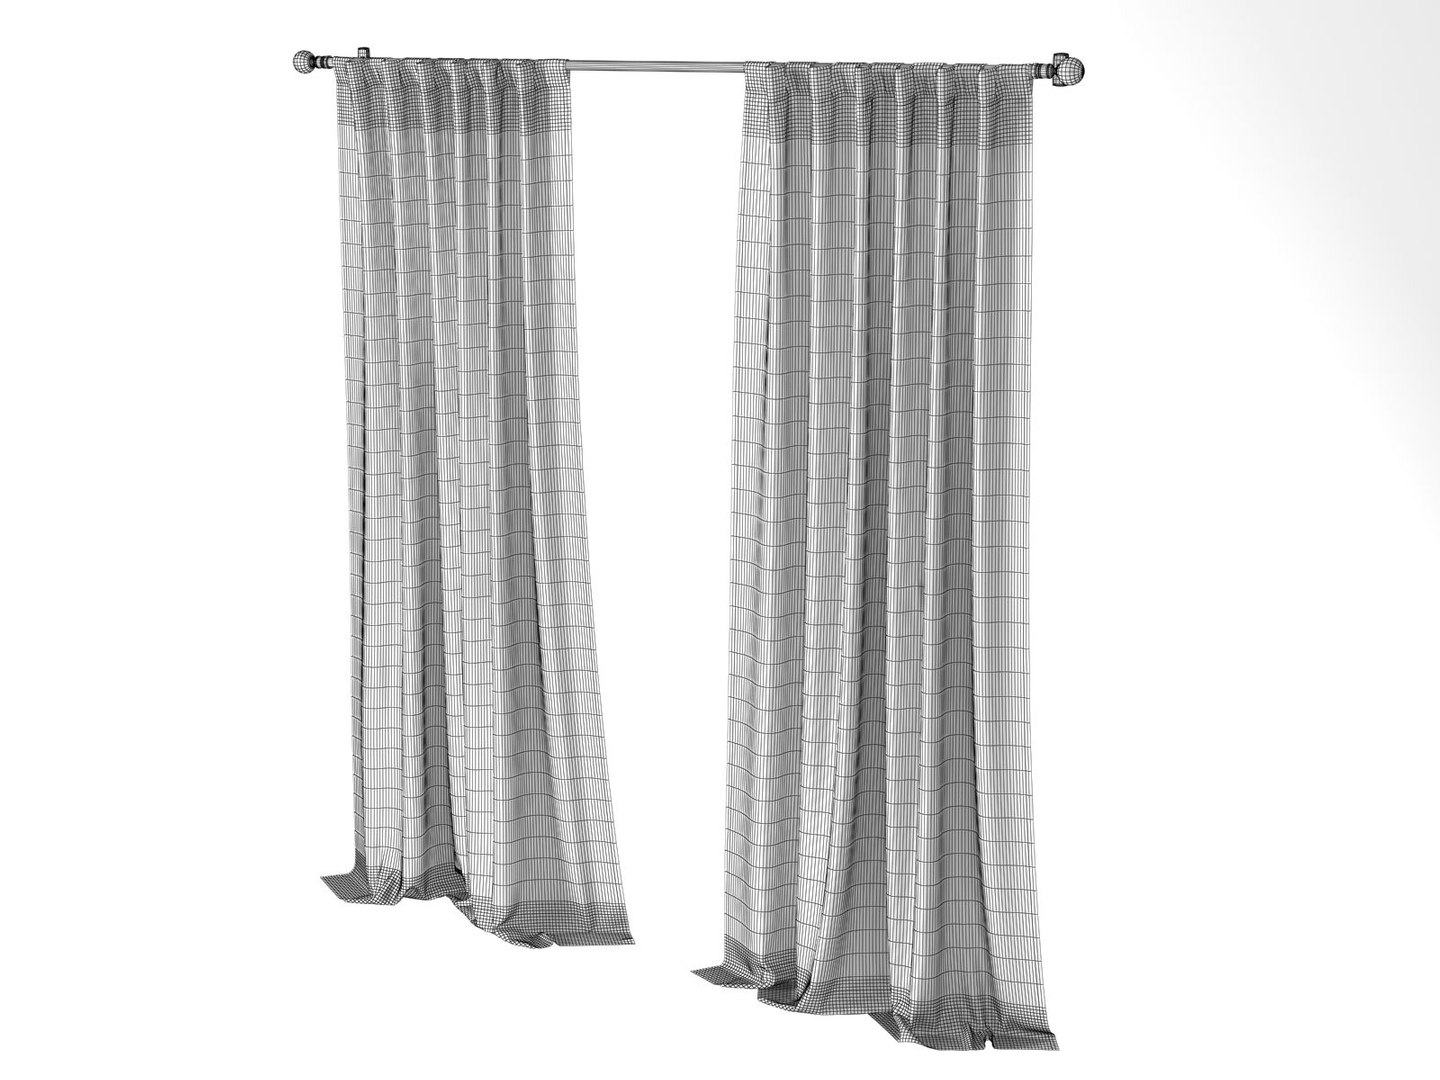 Cotton luster velvet curtains 3D model - TurboSquid 1226134